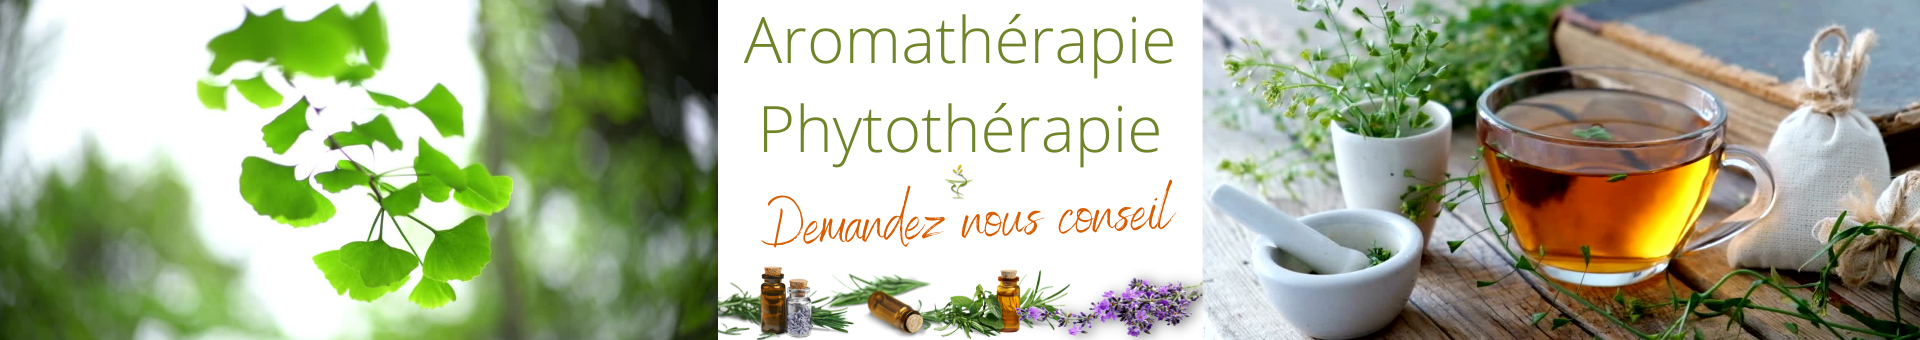 Pour l'aromathérapie et la phytothérapie, demandez conseil à la pharmacie des Ajoncs 36400 La Châtre